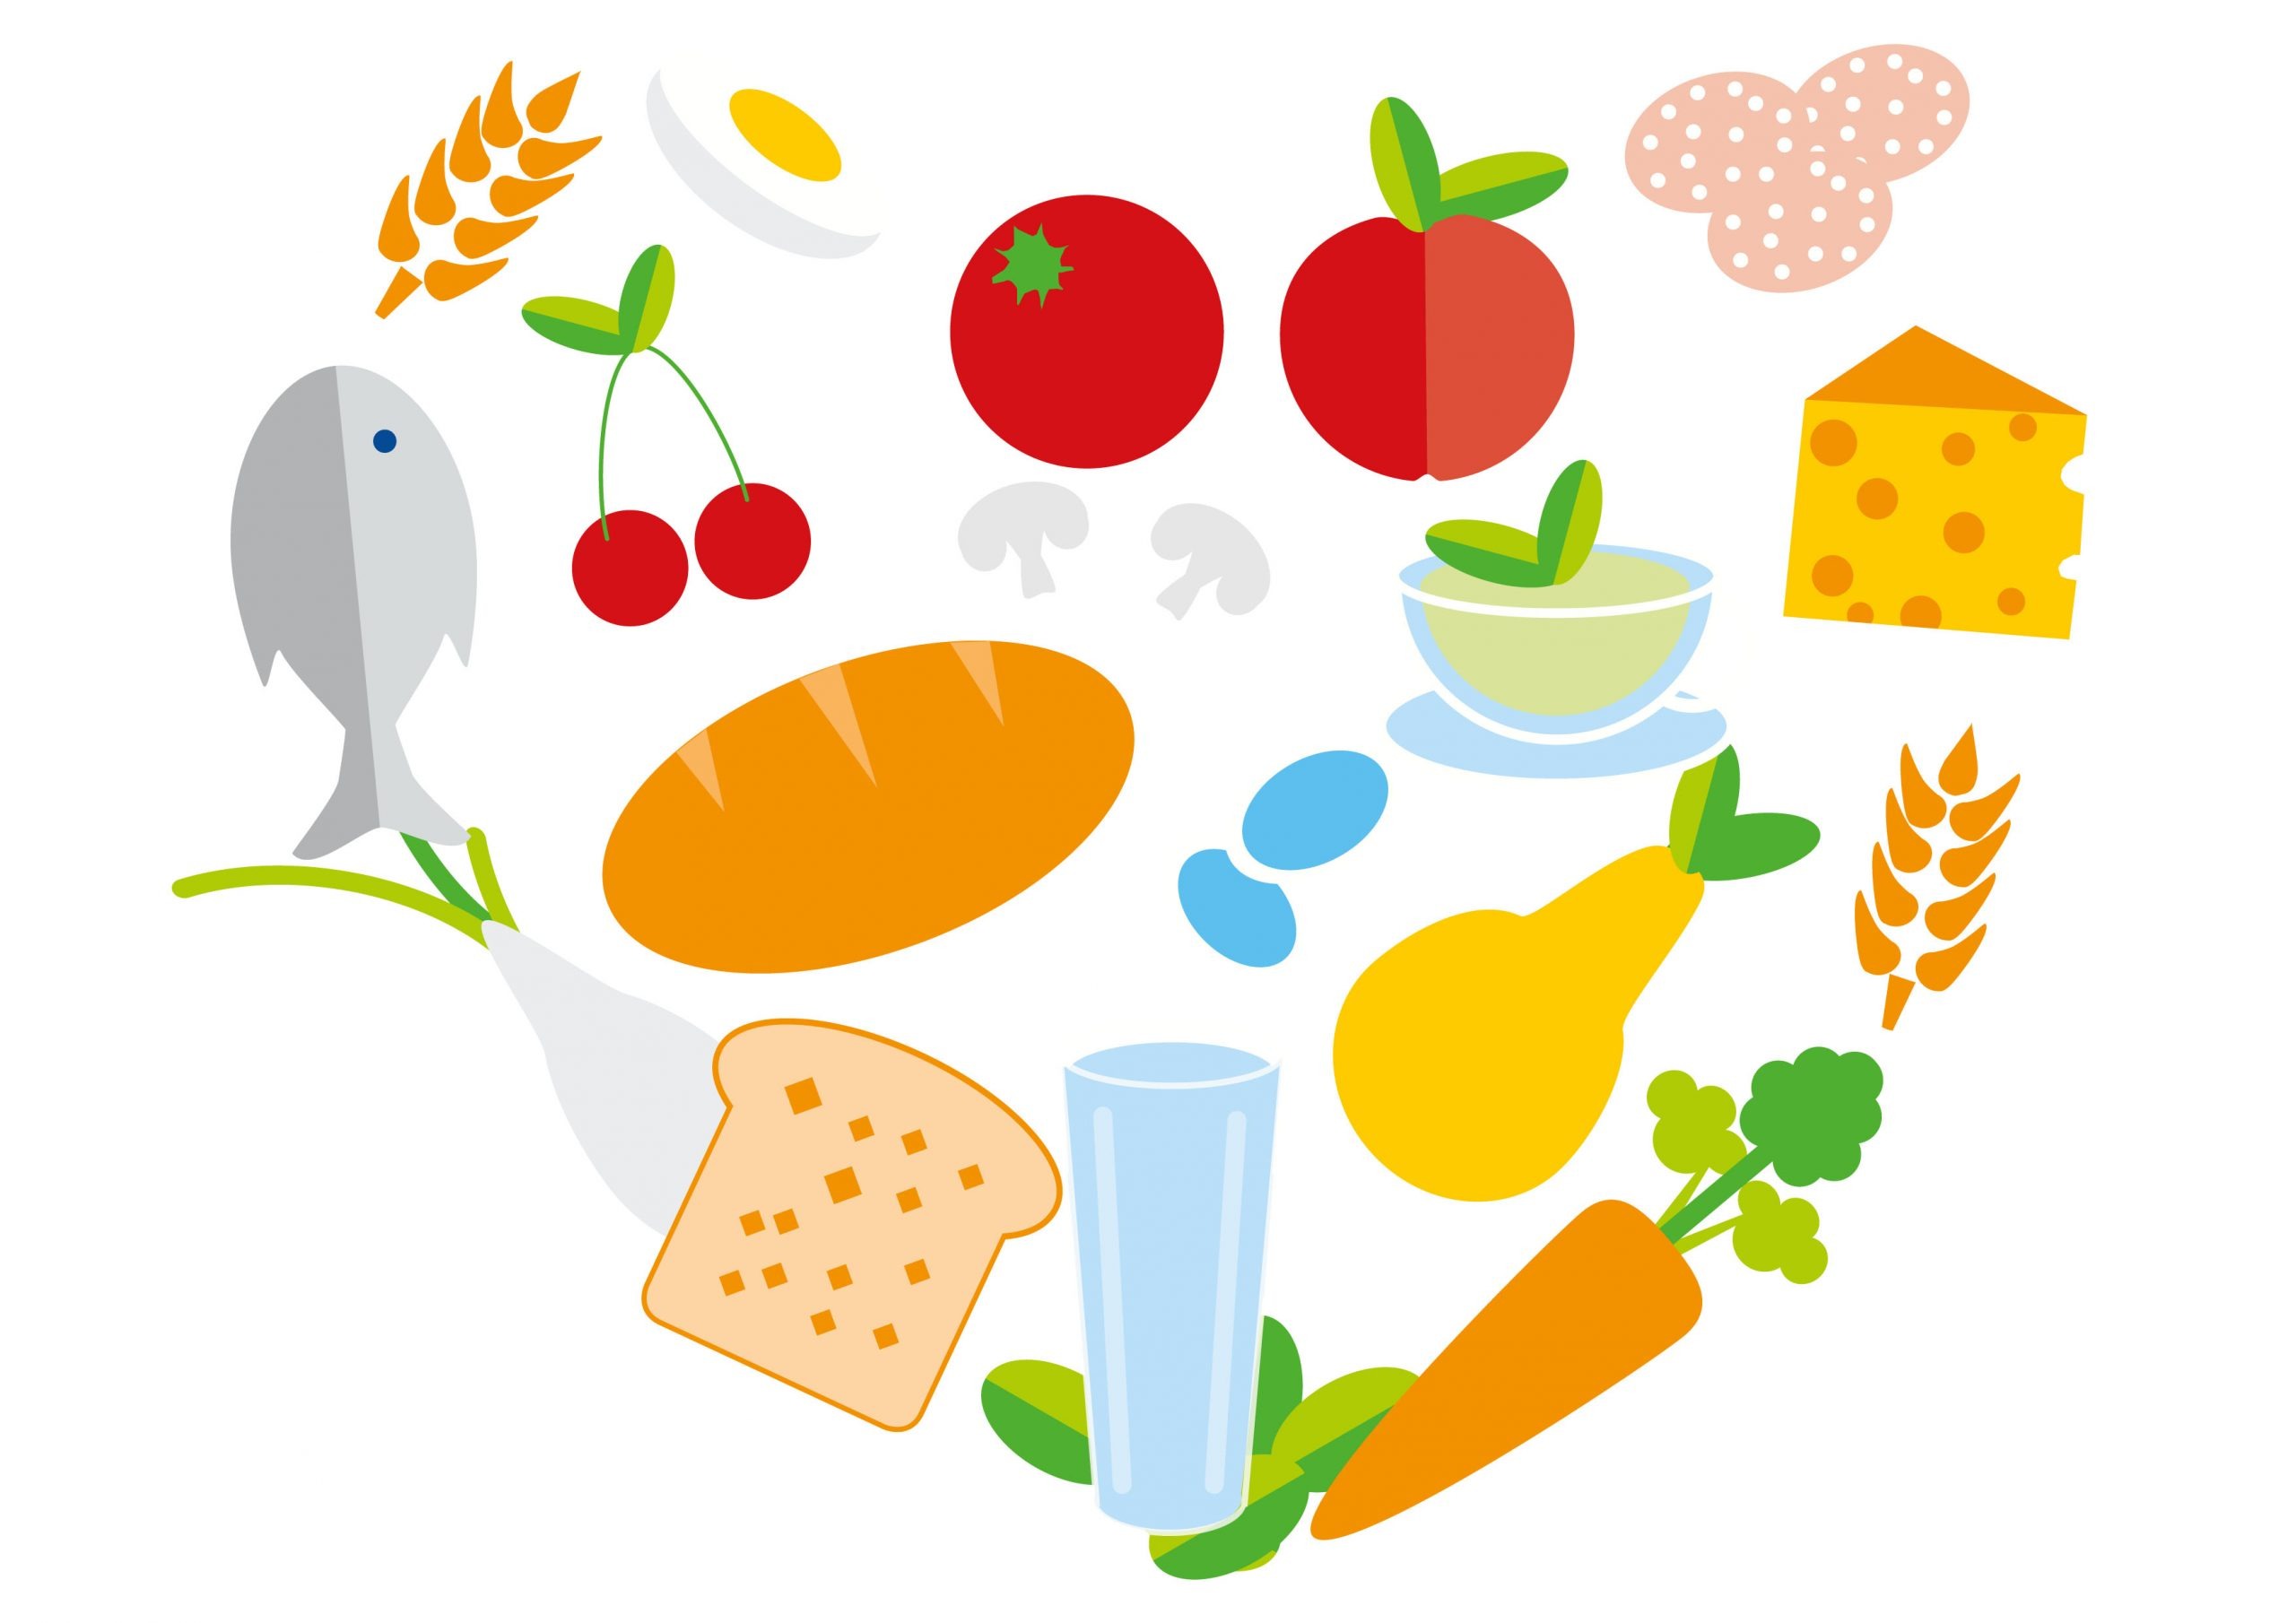 Editorial Illustration | Schulgesundheit & Prävention,10 Regeln der Deutschen Gesellschaft für Ernährung: In Herzform angeordnete vielfältige Lebensmittel